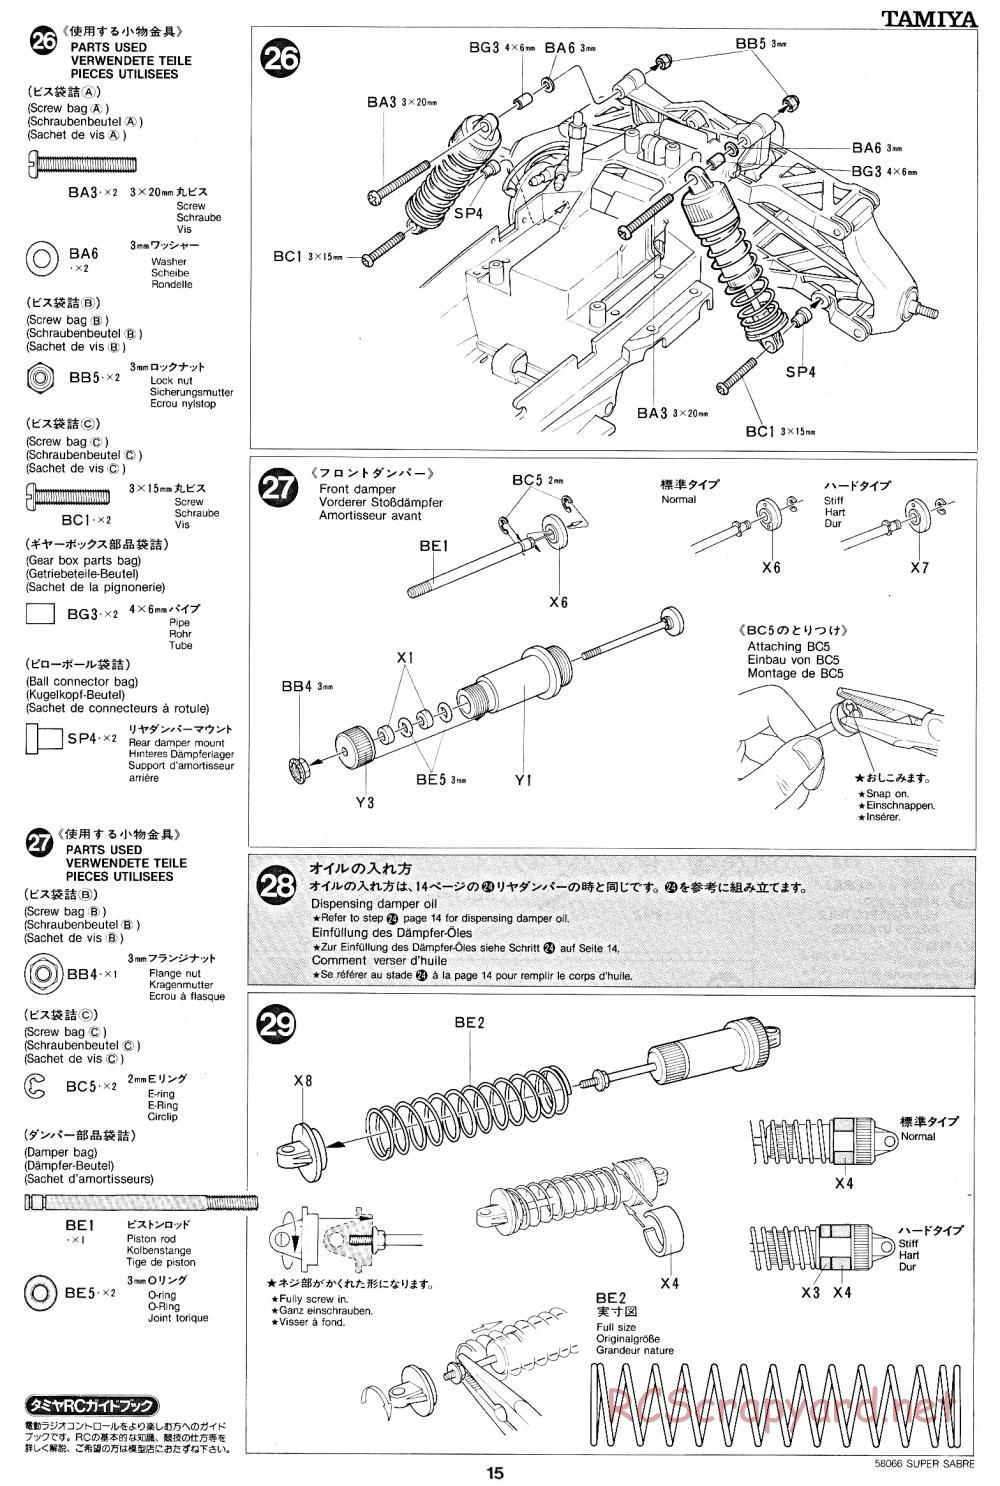 Tamiya - Super Sabre - 58066 - Manual - Page 15